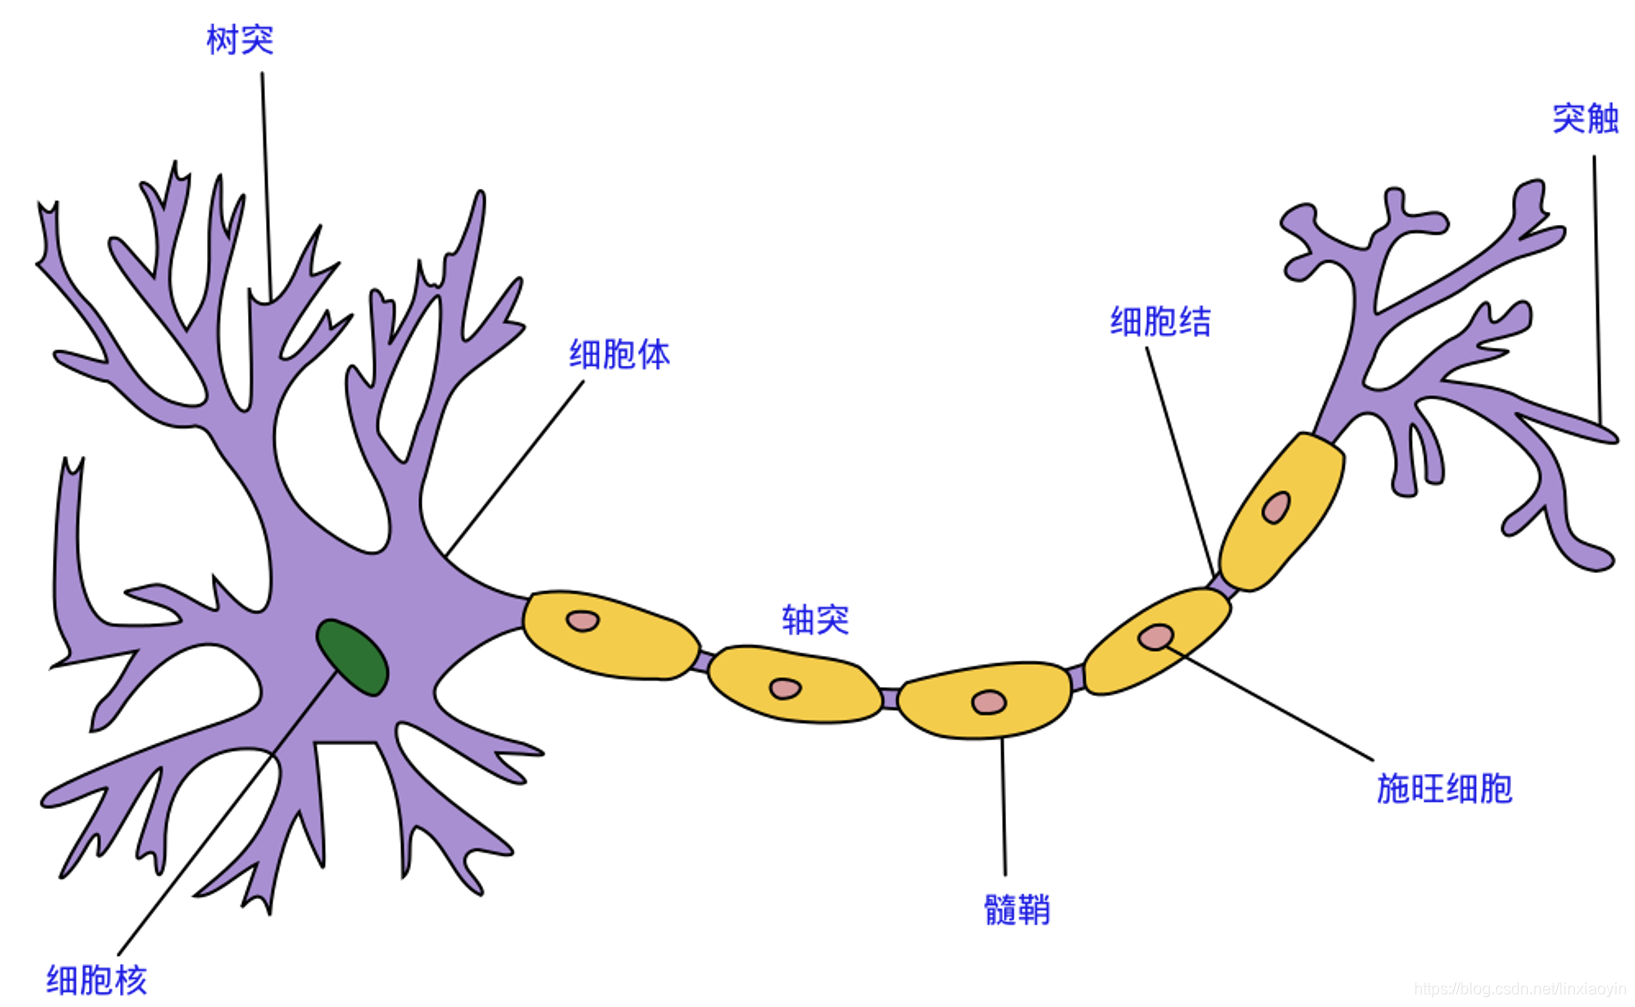 认知神经科学系列｜(2)细胞机制与认知_Tianlong Lee的博客-程序员宅基地 - 程序员宅基地